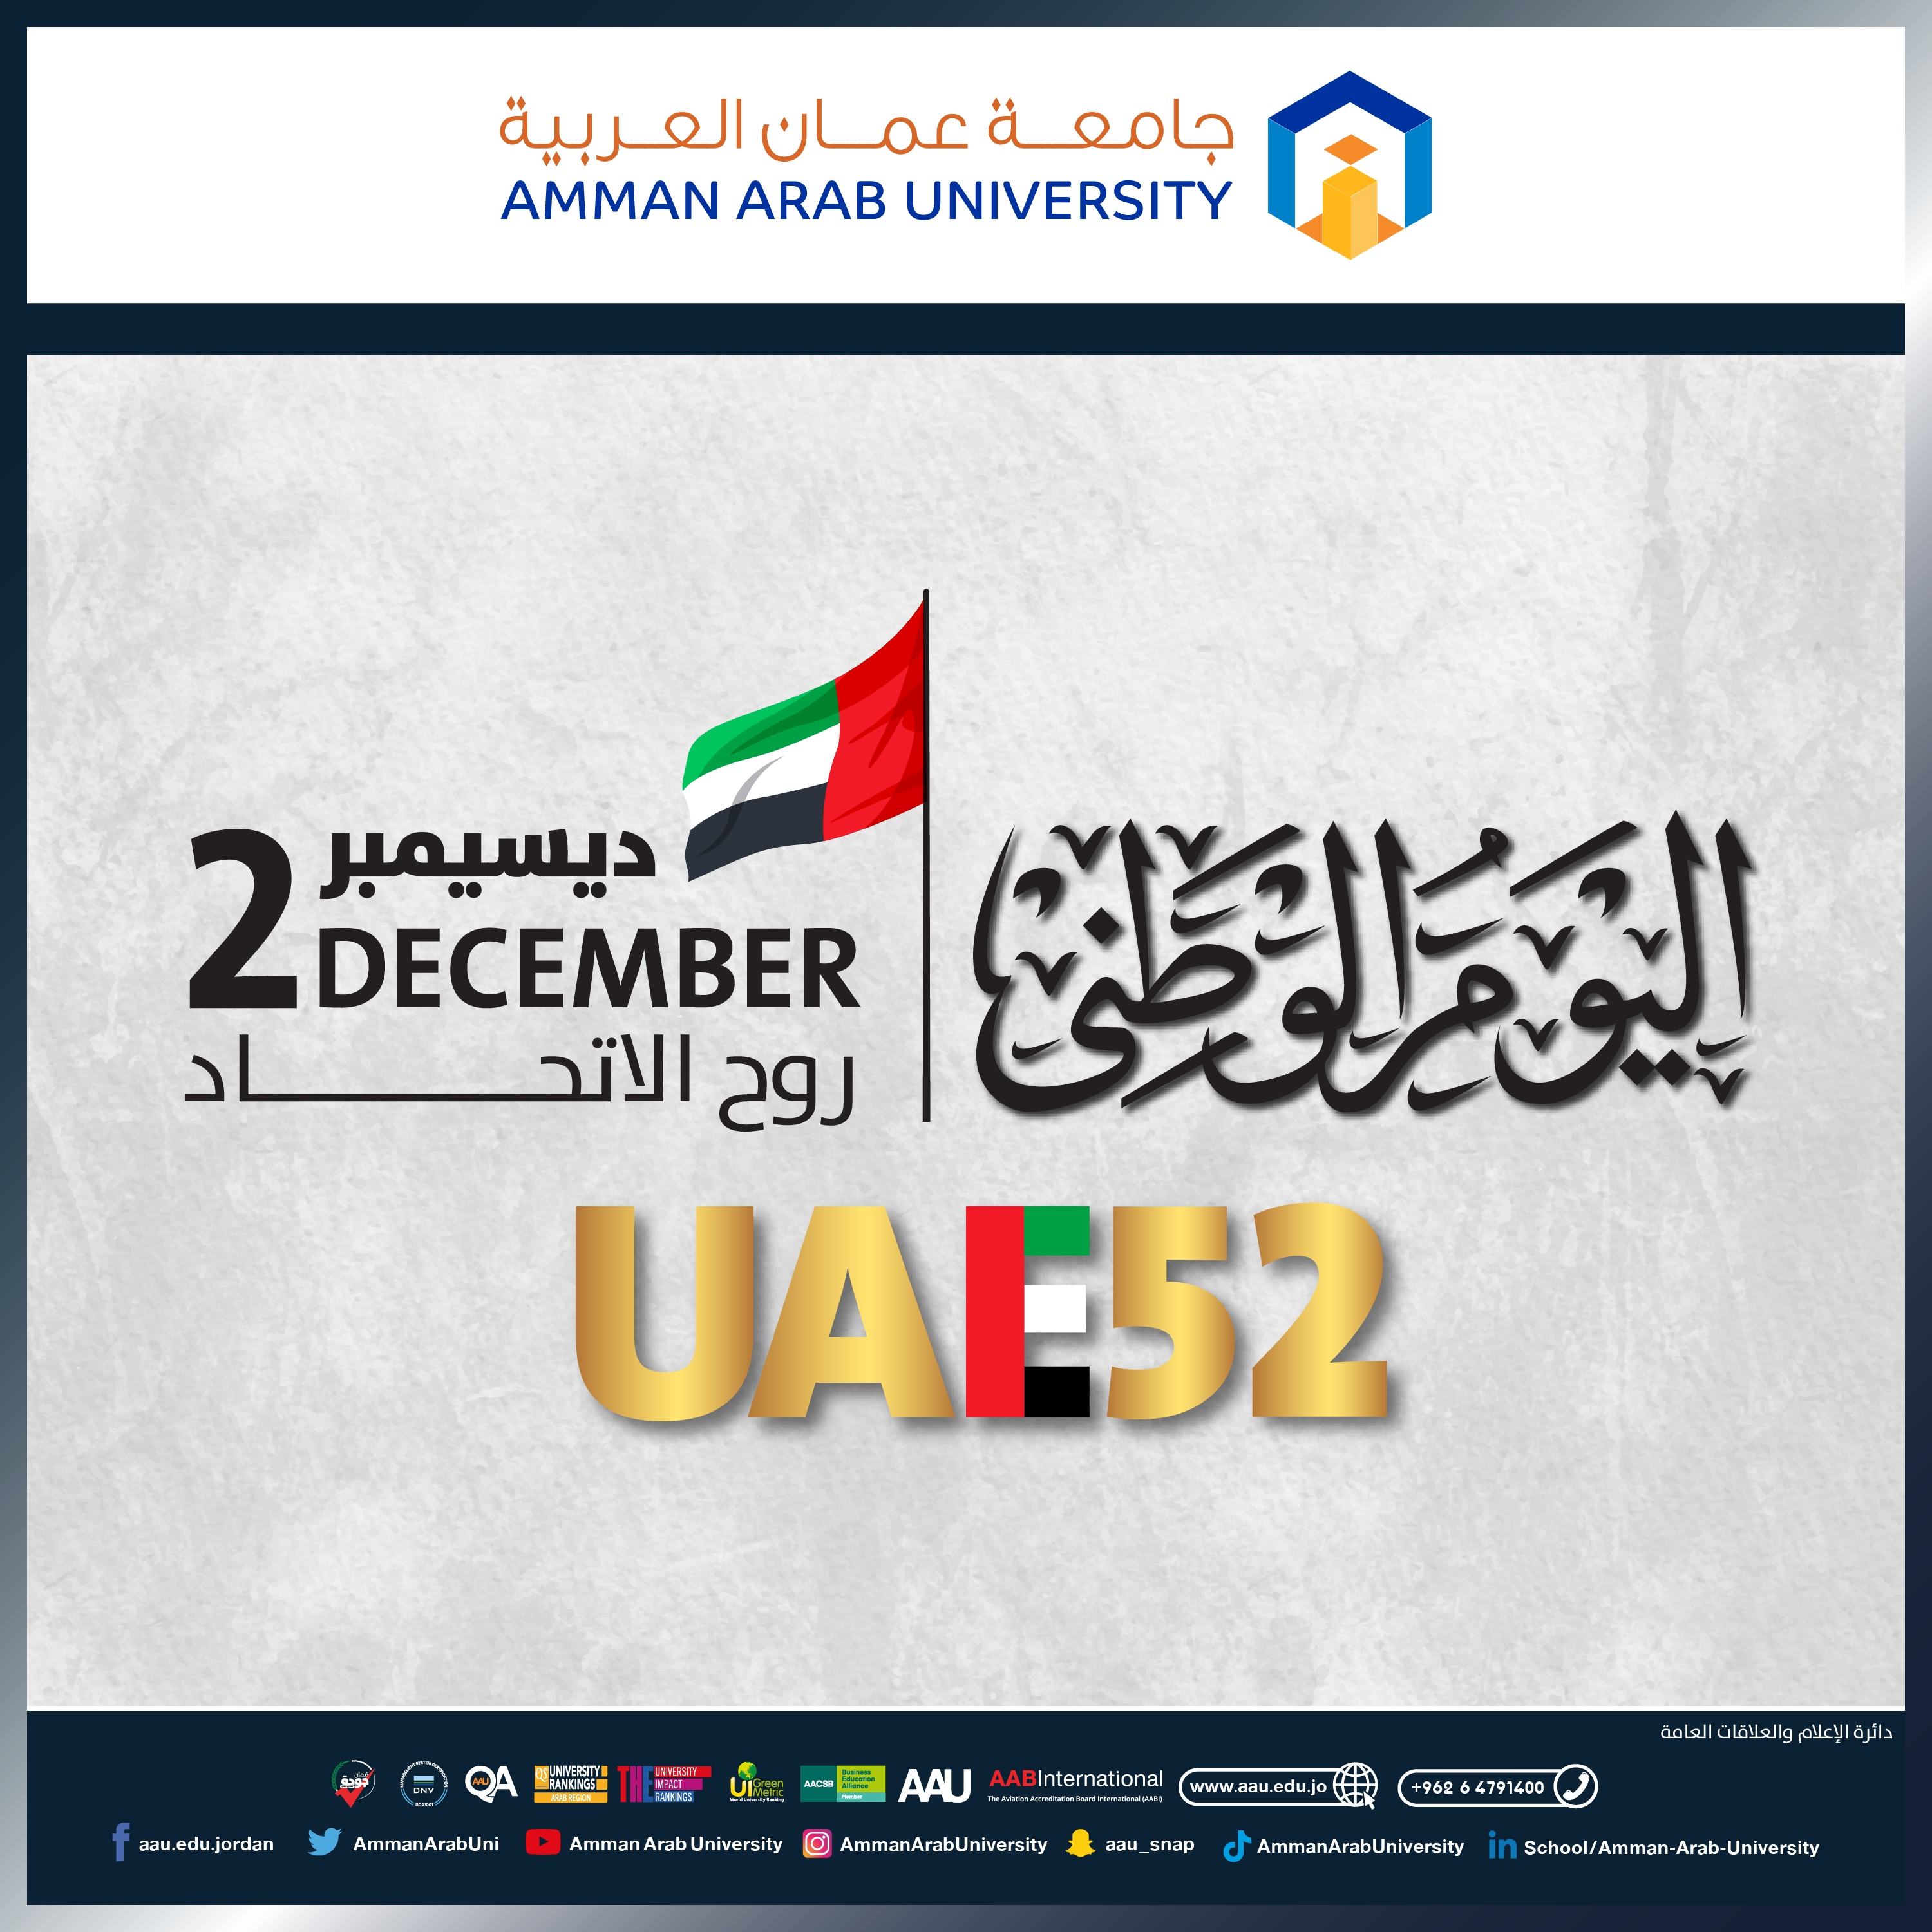 رئيس وأسرة جامعة عمان العربية يهنئون بمناسبة " اليوم الوطني لدولة الإمارات العربية المتحدة "